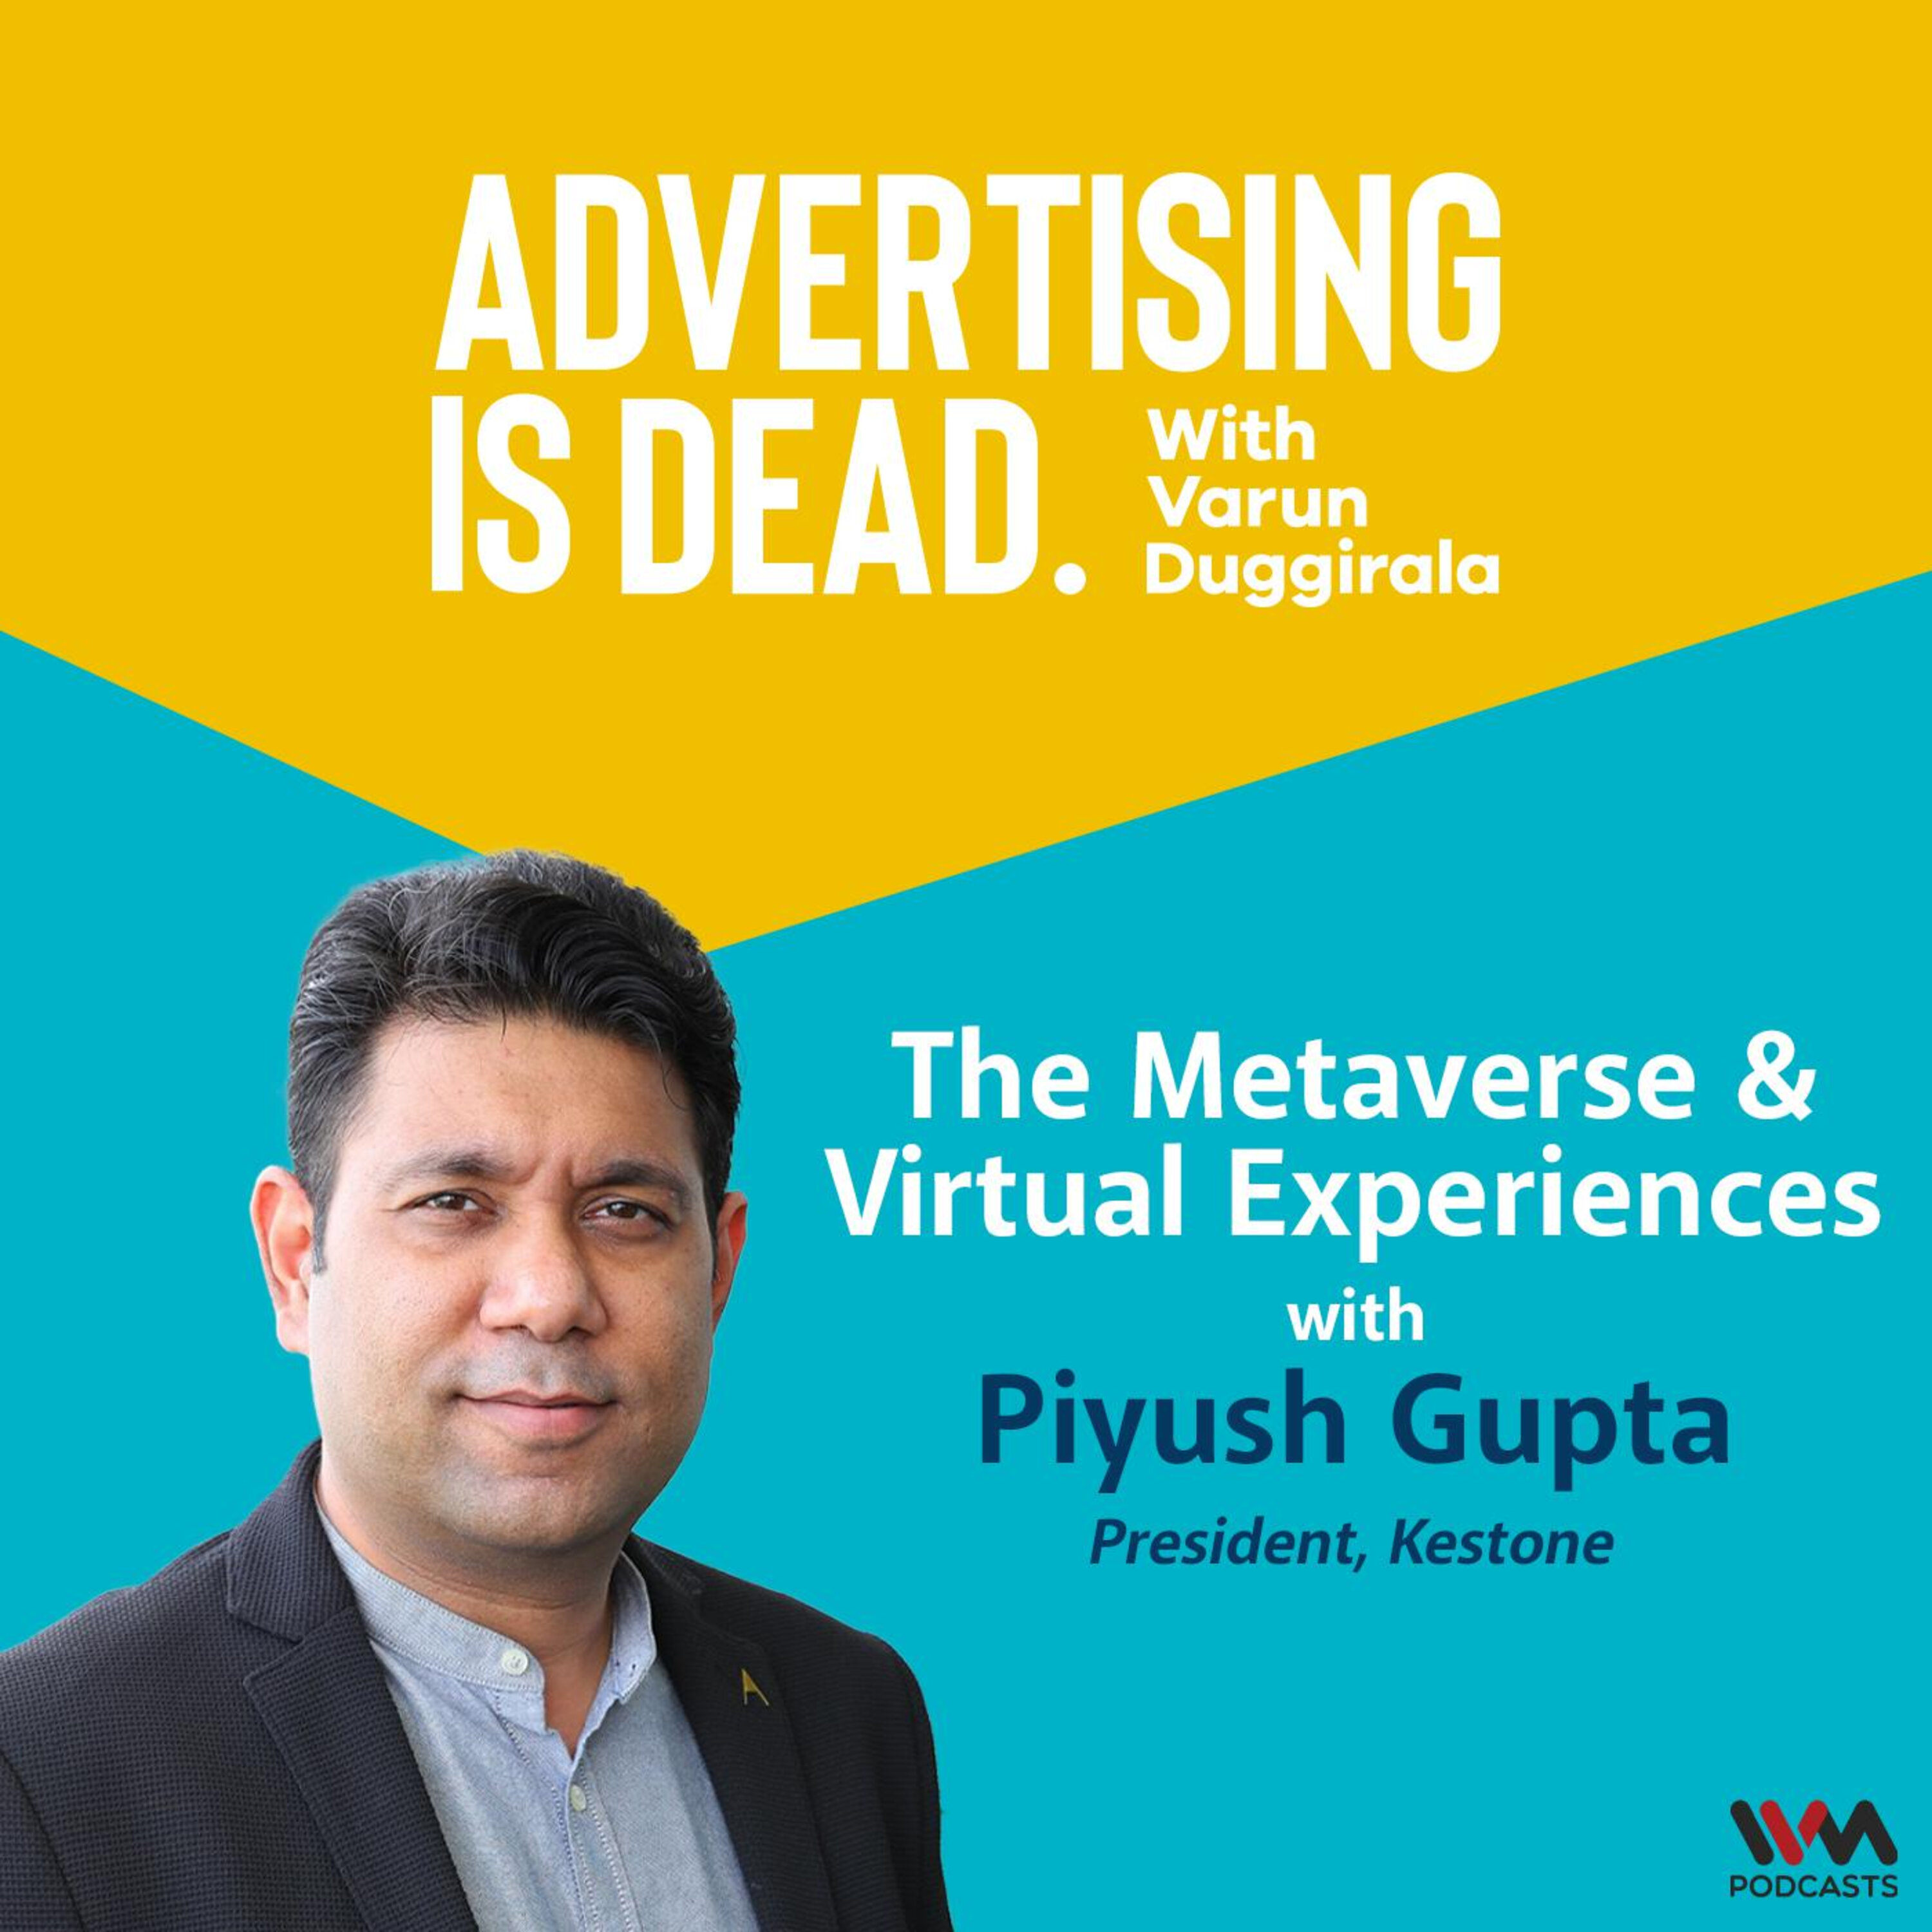 The Metaverse & Virtual Experiences with Piyush Gupta